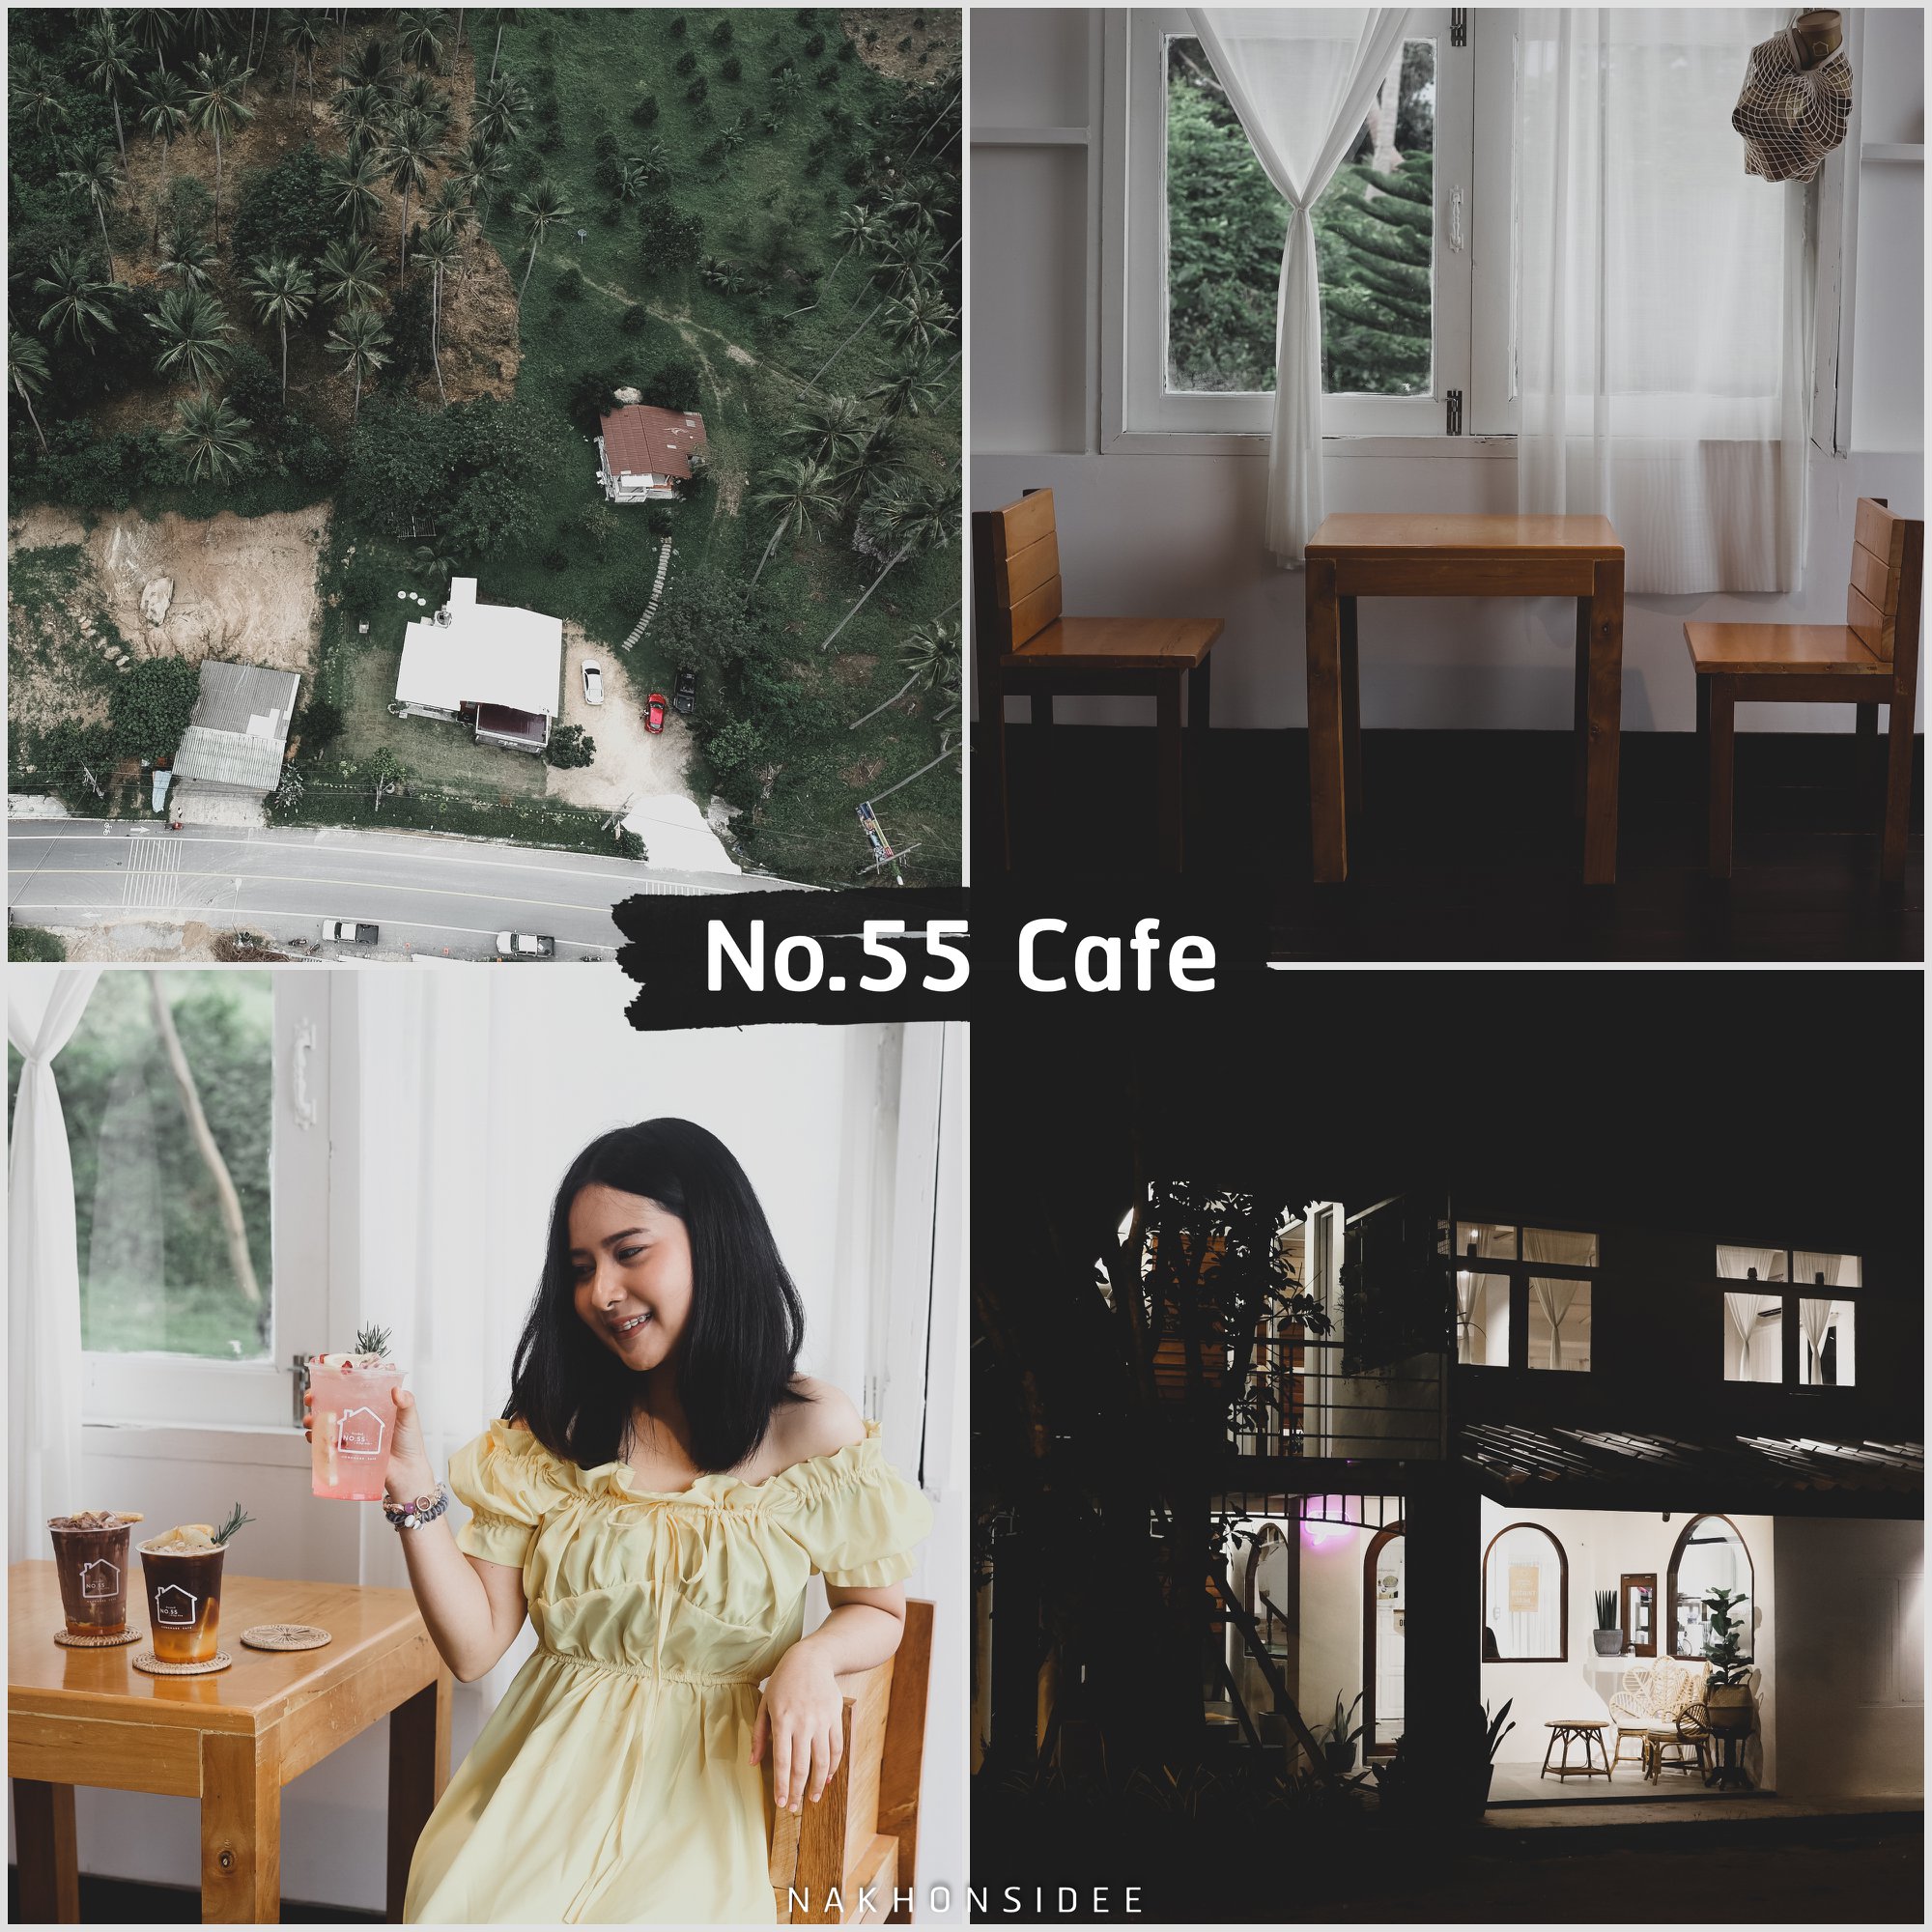  No.55-Cafe
คลิกที่นี่ คาเฟ่สวย,วิวหลักล้าน,นครศรีธรรมราช,รวมcafe,คาเฟ่,ร้านอาหาร,ร้านกาแฟ,ภูเขา